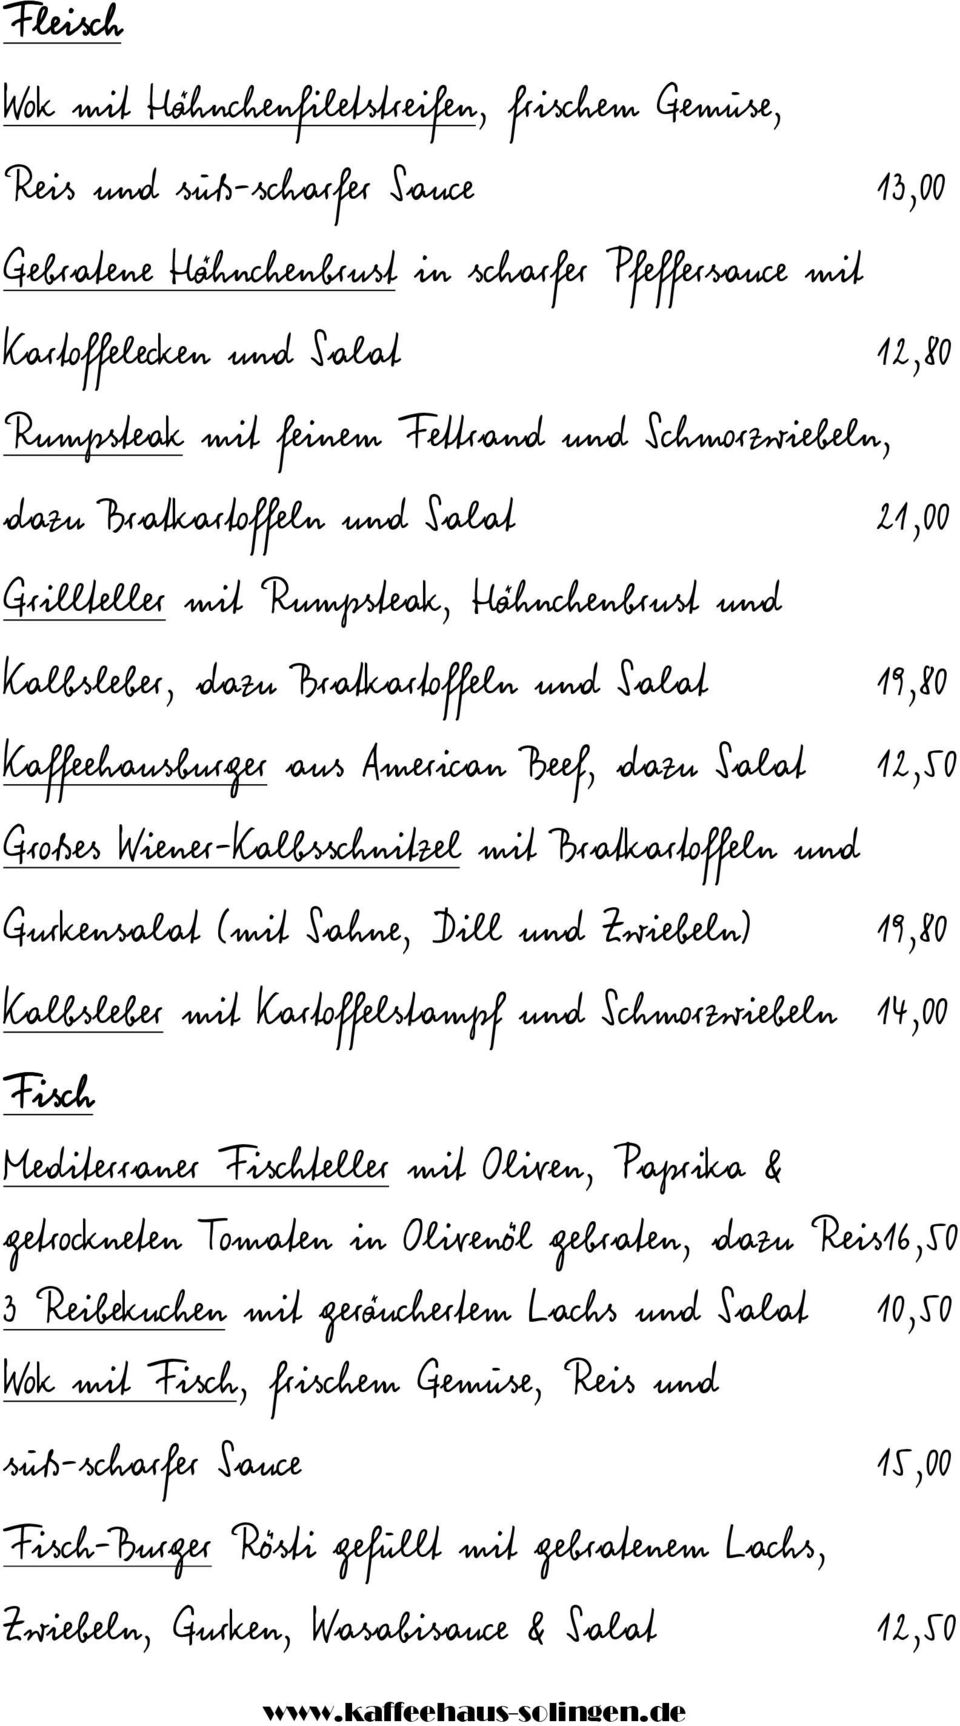 Salat 12,50 Großes Wiener-Kalbsschnitzel mit Bratkartoffeln und Gurkensalat (mit Sahne, Dill und Zwiebeln) 19,80 Kalbsleber mit Kartoffelstampf und Schmorzwiebeln 14,00 Fisch Mediterraner Fischteller